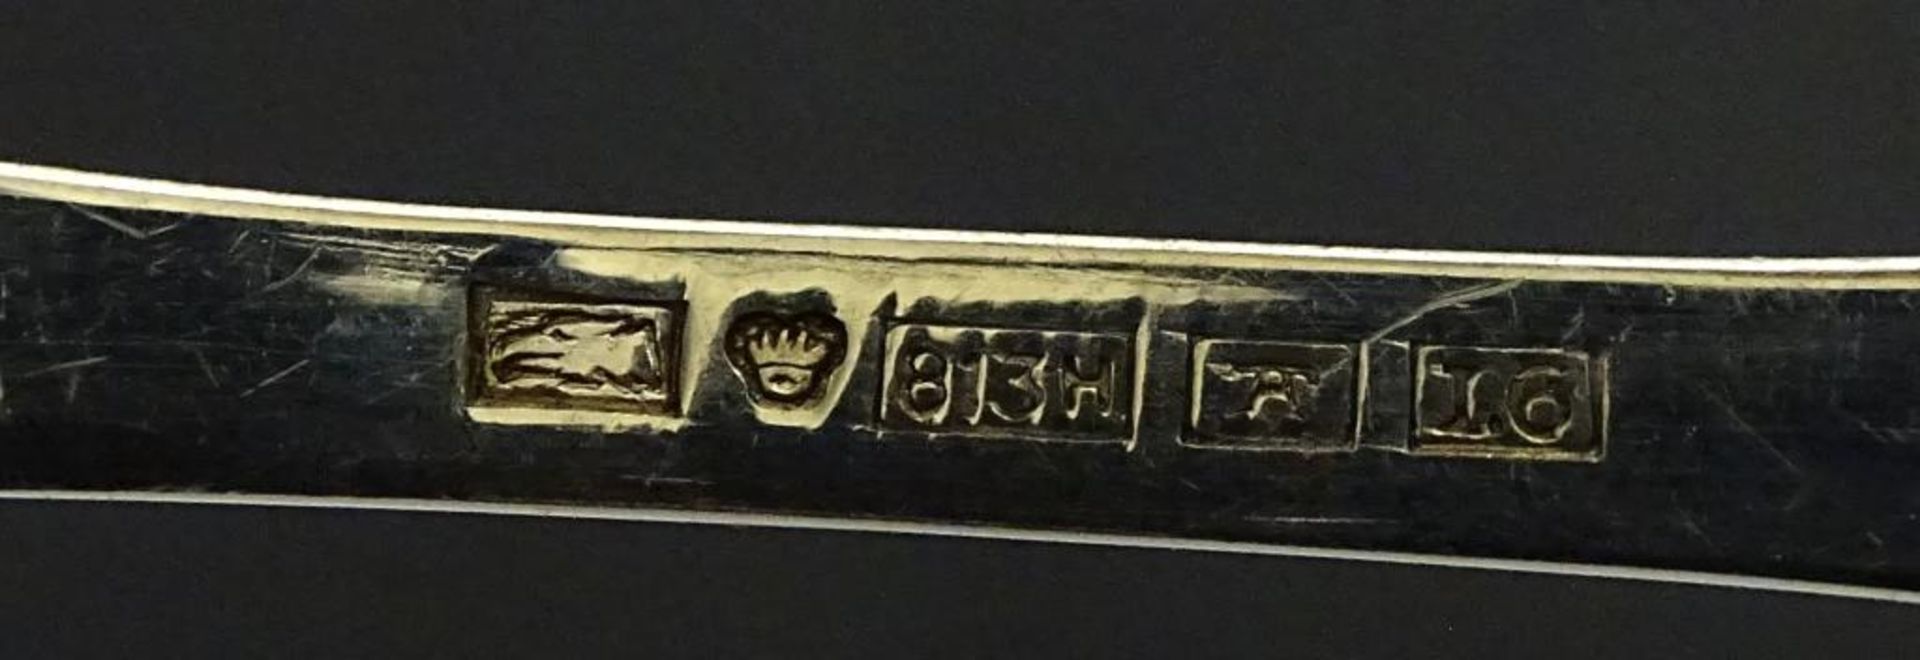 Löffel mit Wappen,emailliert,div.Punzierungen,L- 12,5cm,Silber, 17,8gr - Bild 2 aus 2